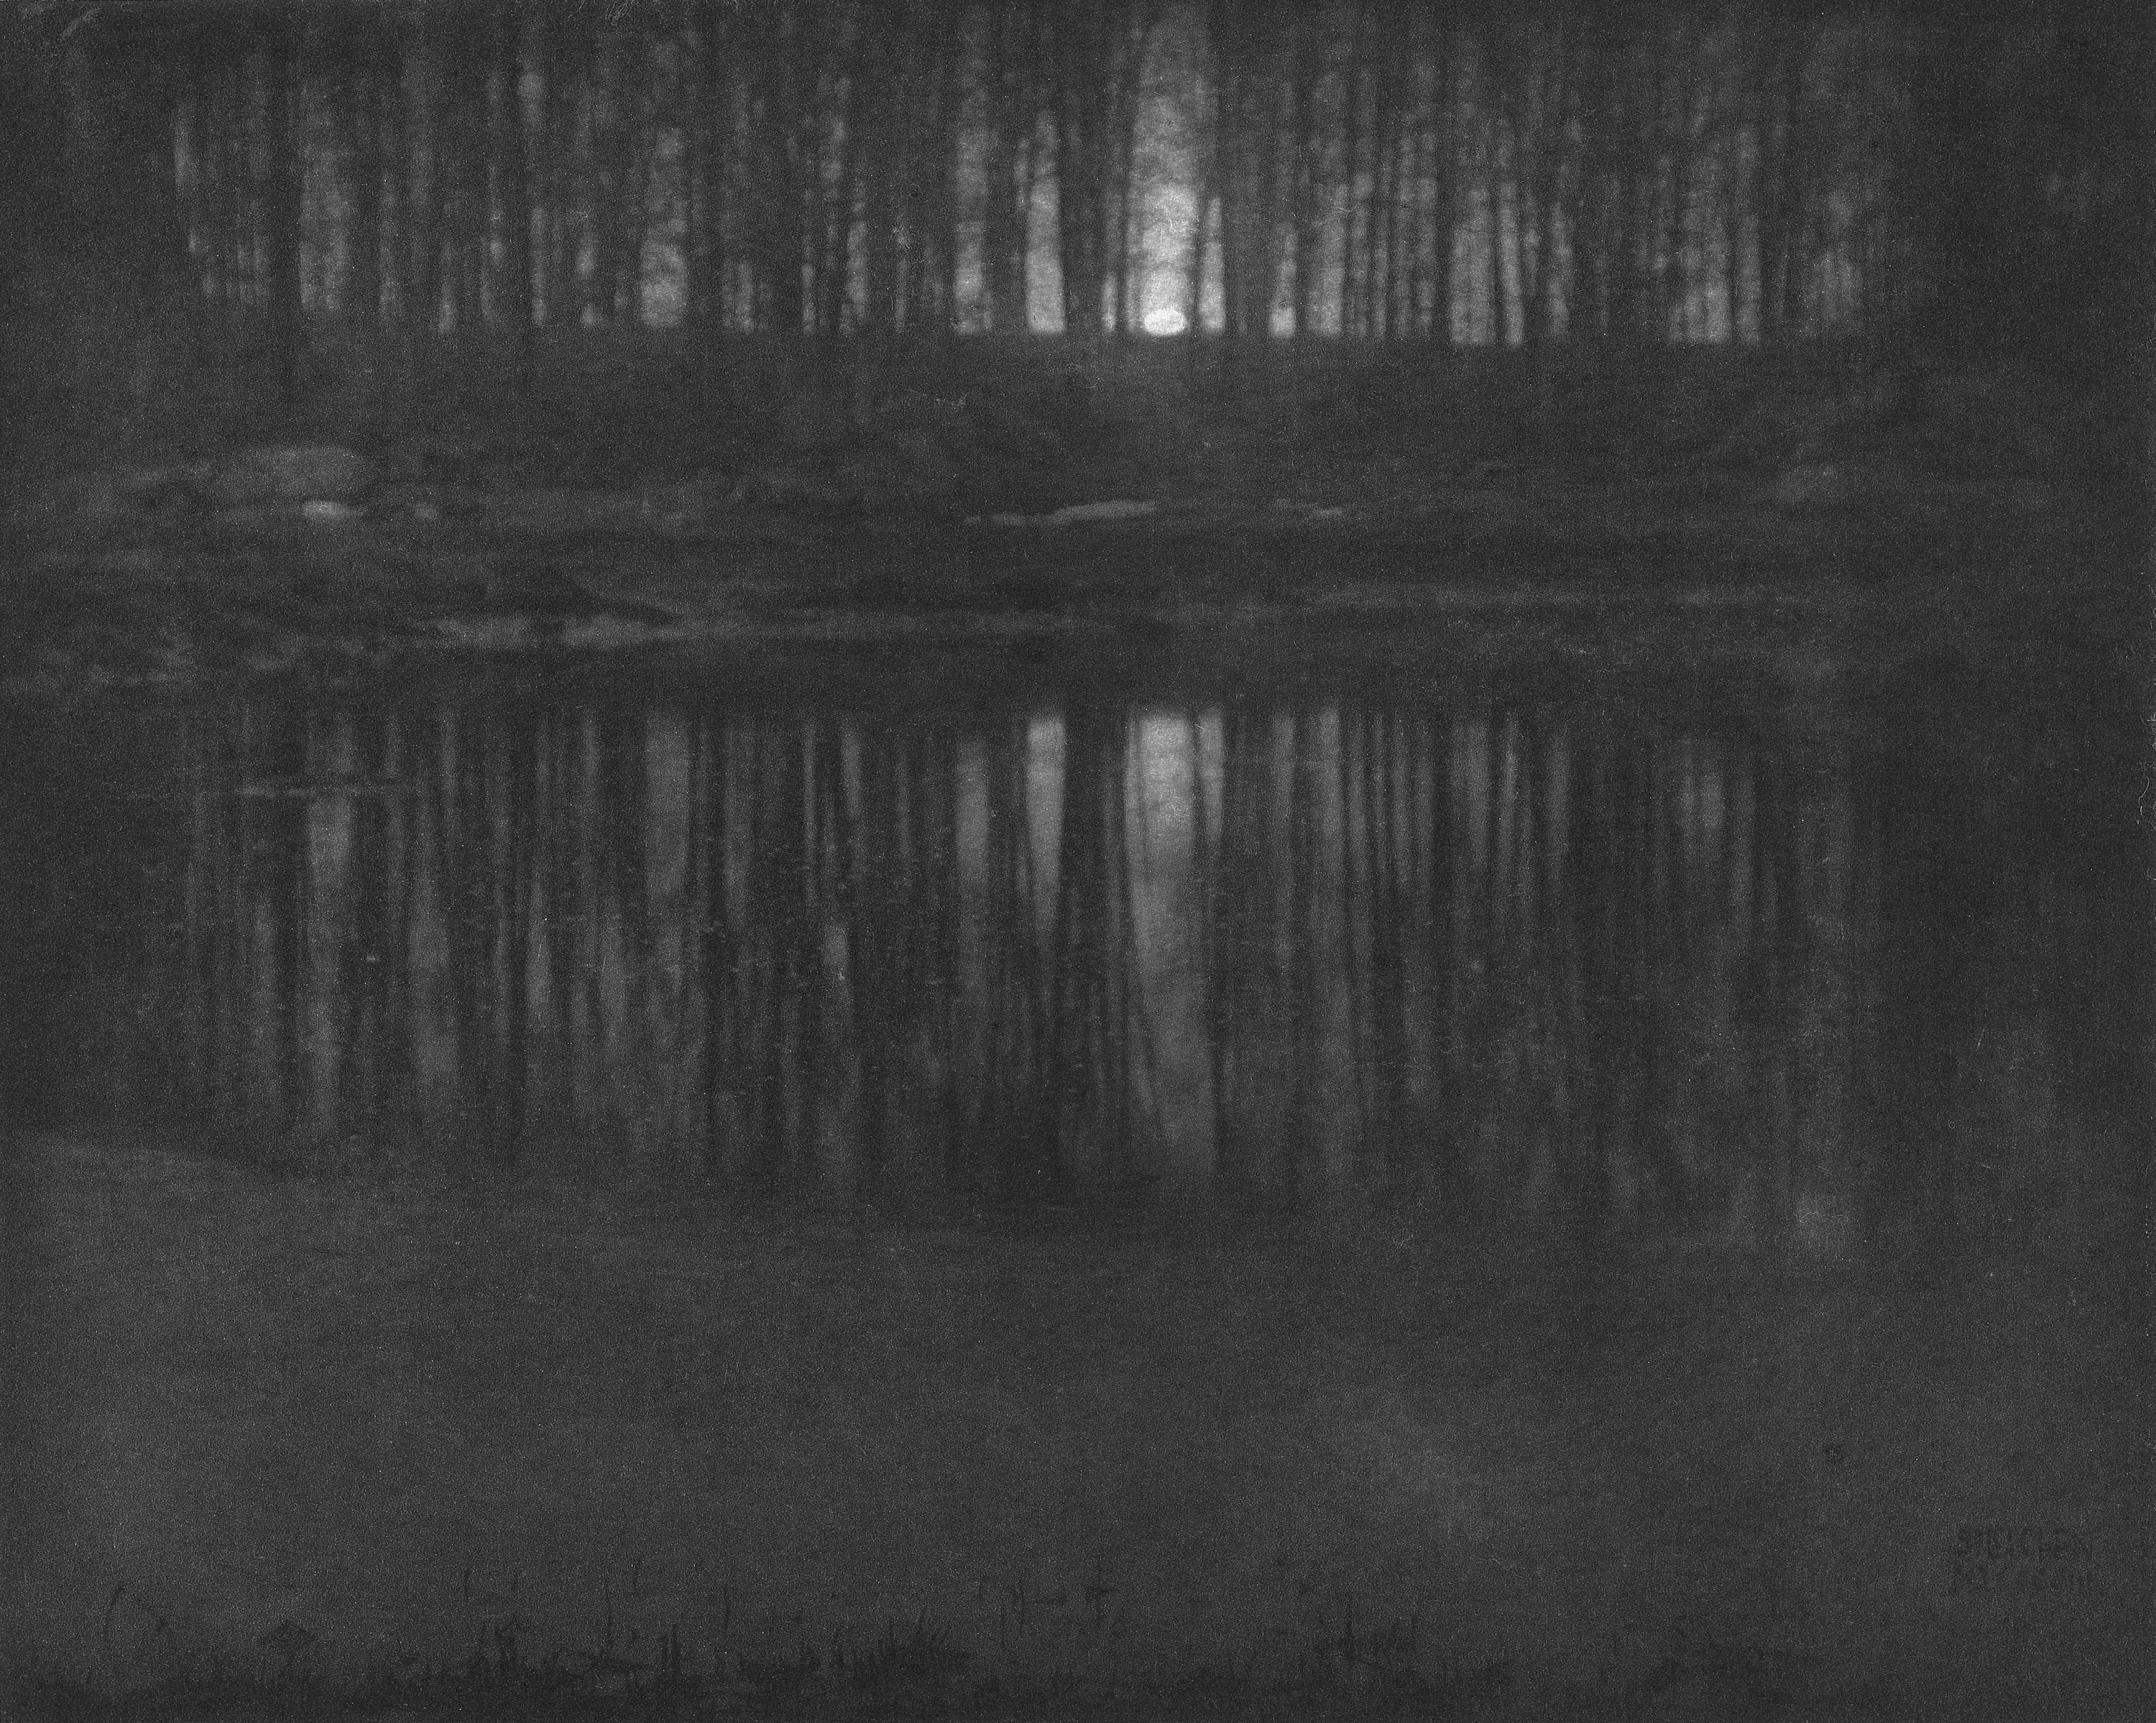 Moonlight, The Pond, Edward J. Steichen